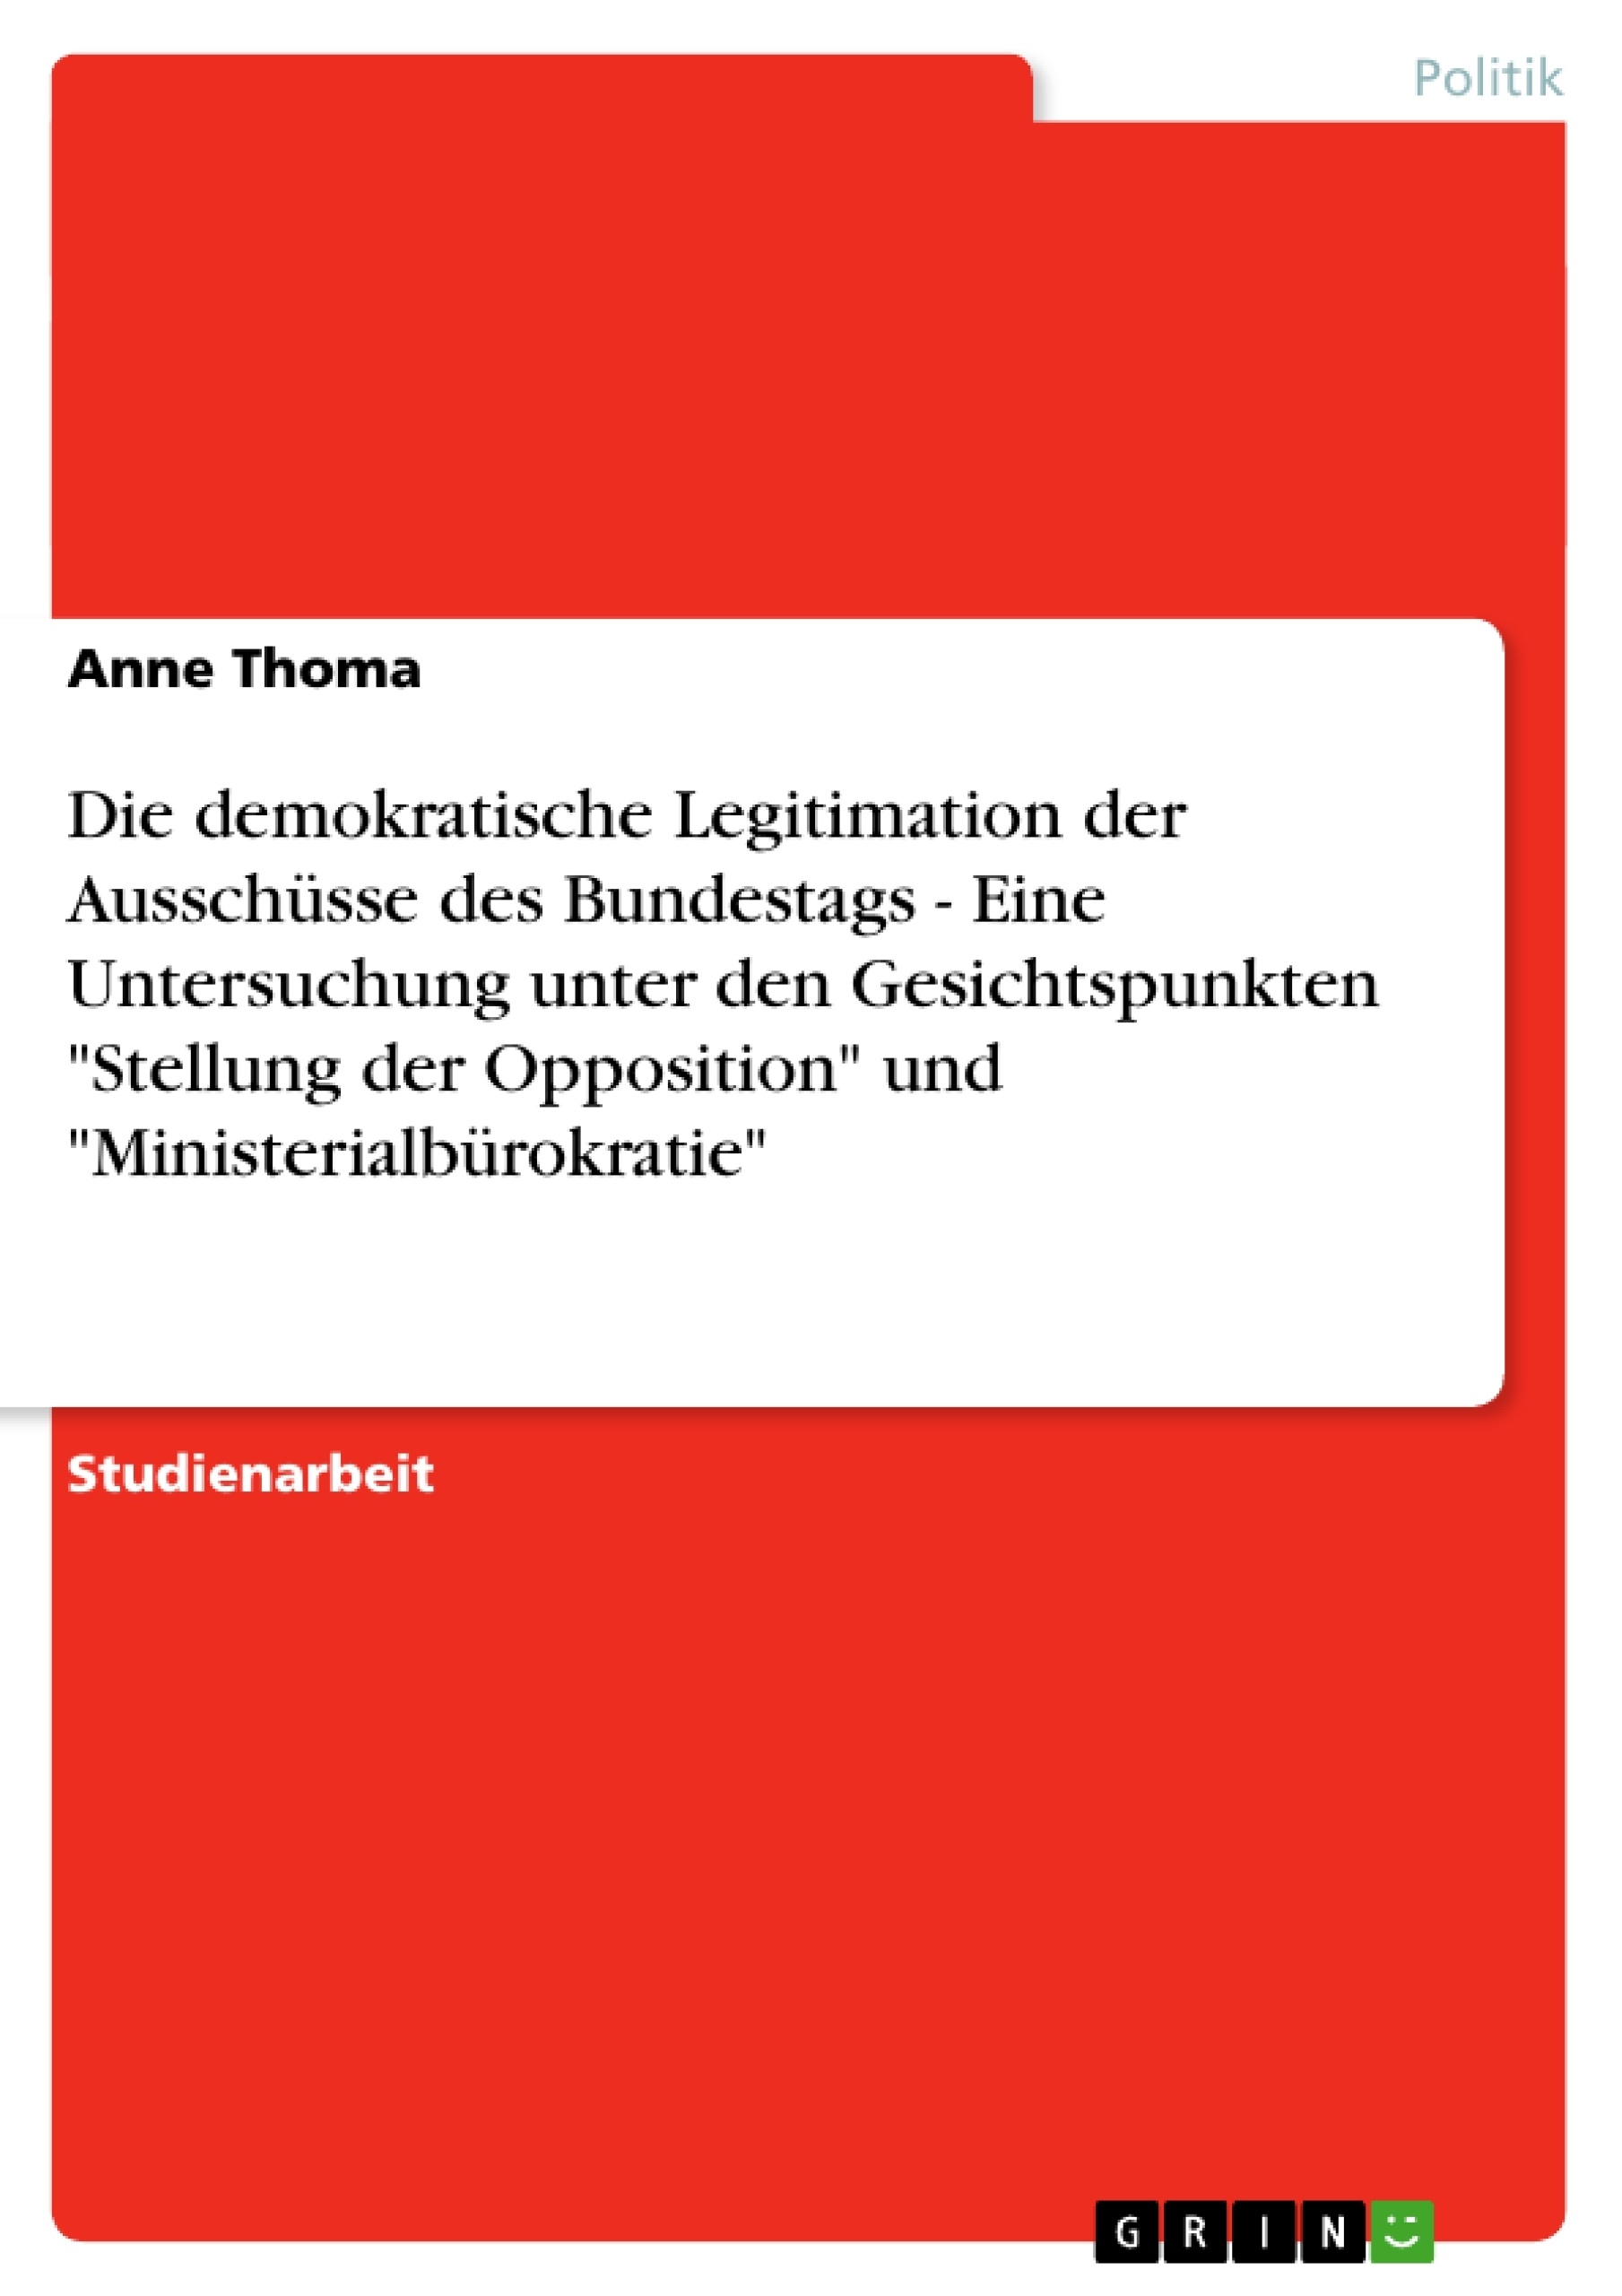 Title: Die demokratische Legitimation der Ausschüsse des Bundestags - Eine Untersuchung unter den Gesichtspunkten "Stellung der Opposition" und "Ministerialbürokratie"